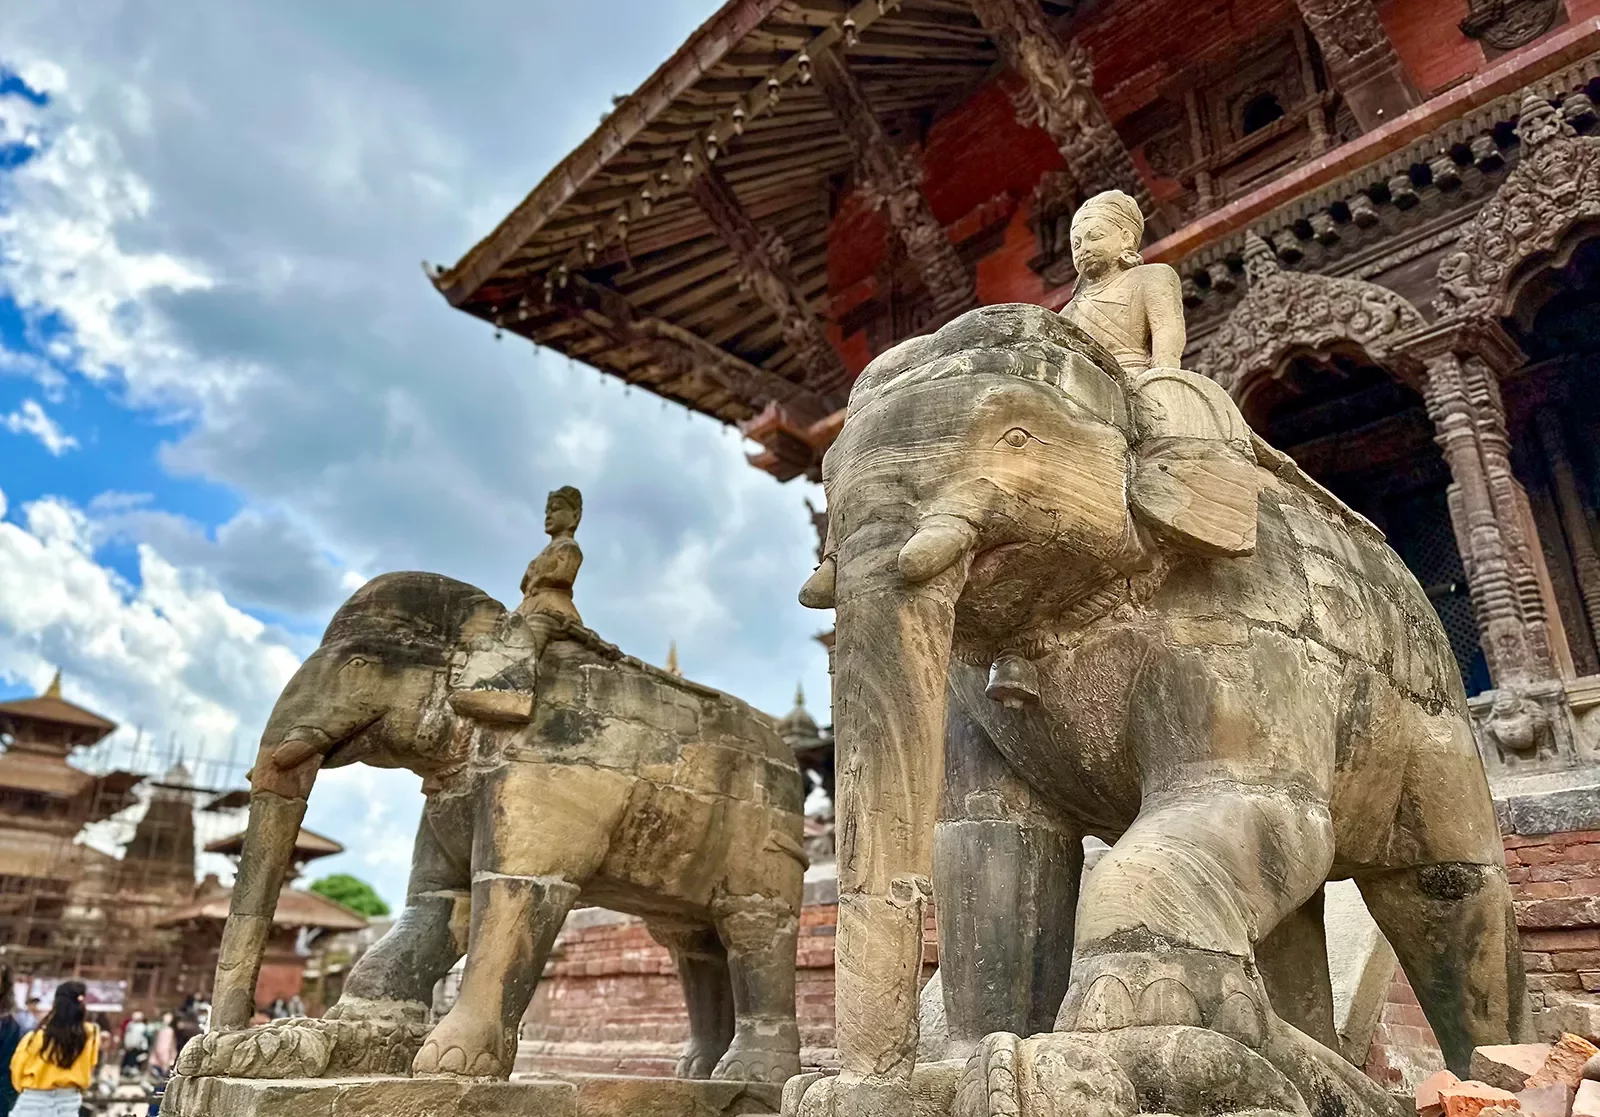 Stone statues of elephants in Nepal